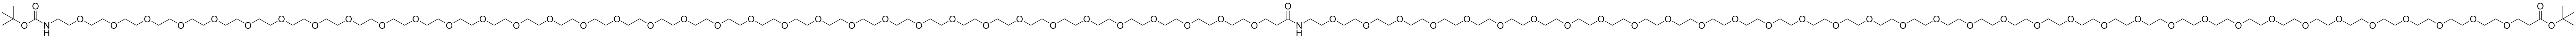 t-Boc-N-amido-PEG36-CONH-PEG36-t-butyl ester